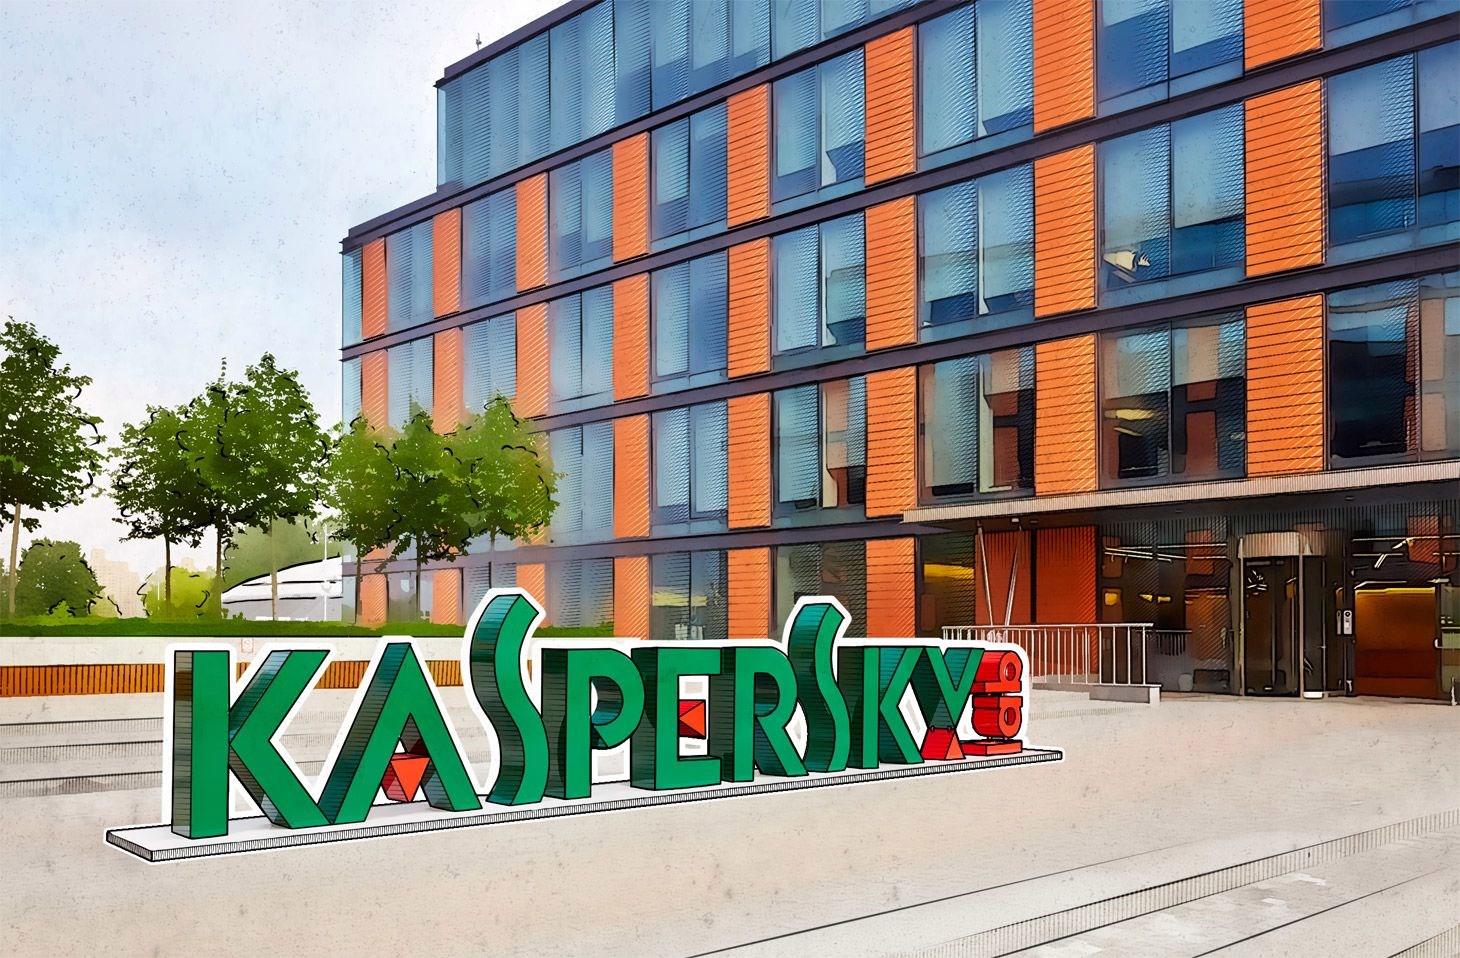 Kaspersky ABD’de yasaklanıyor